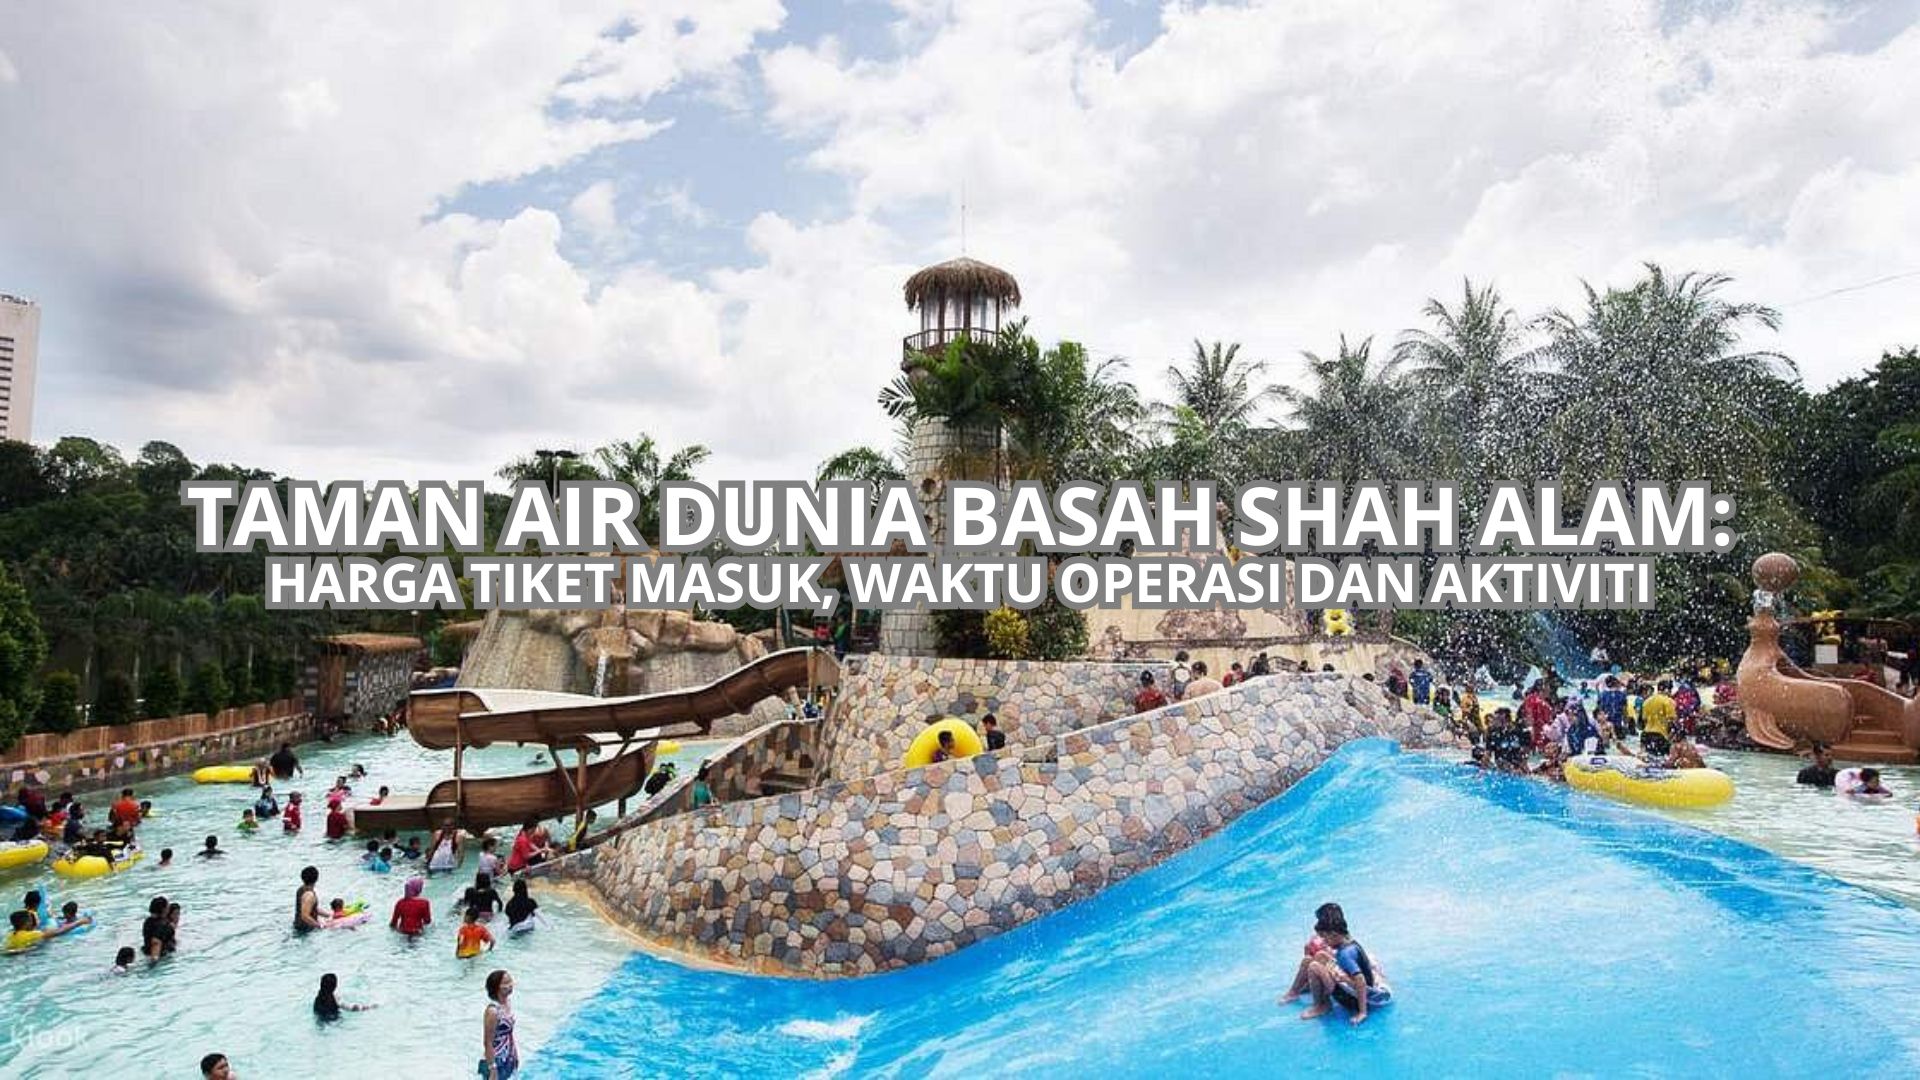 Taman Air Dunia Basah Shah Alam Cover